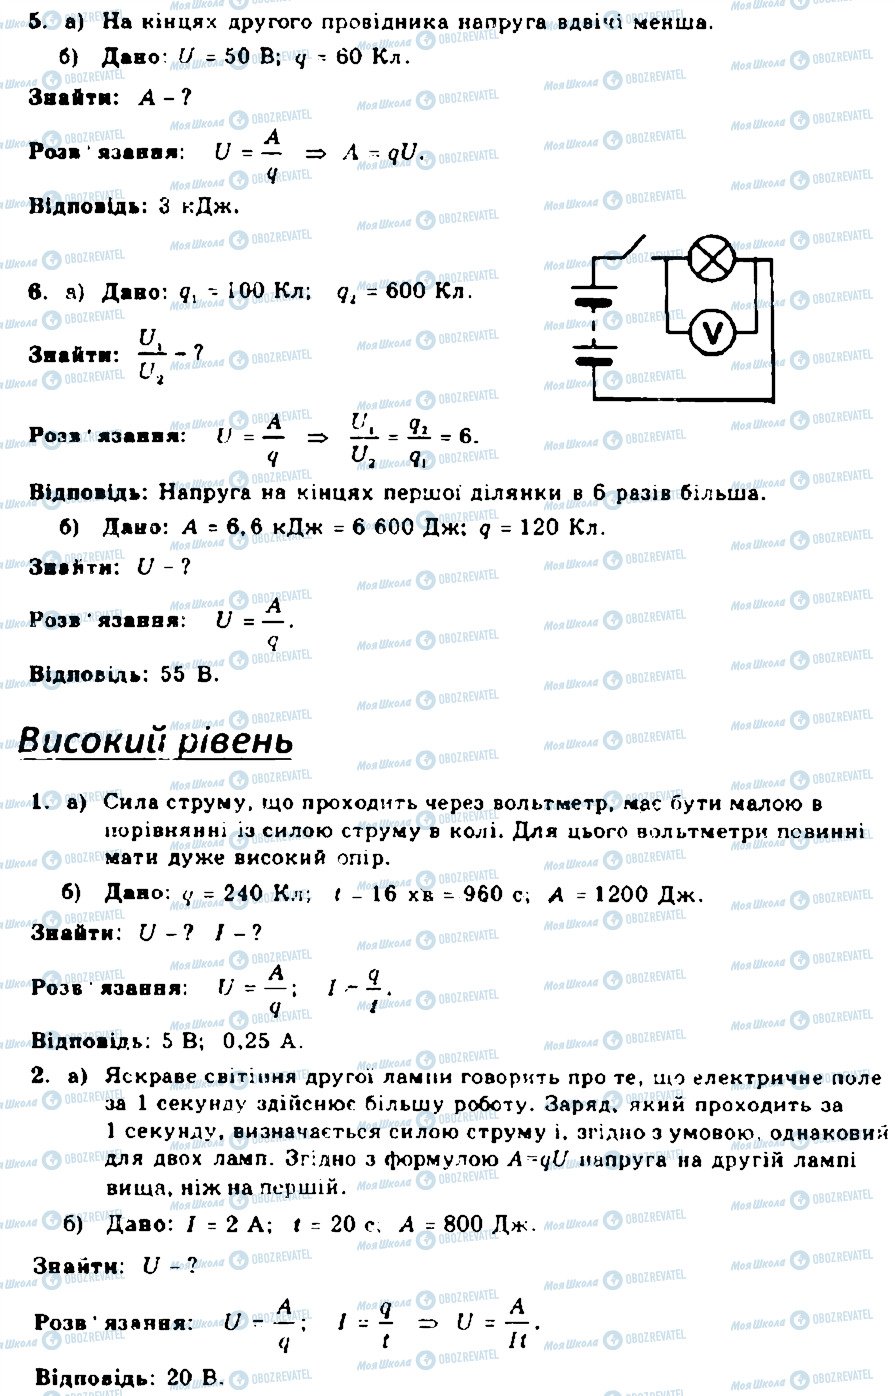 ГДЗ Фізика 9 клас сторінка 4